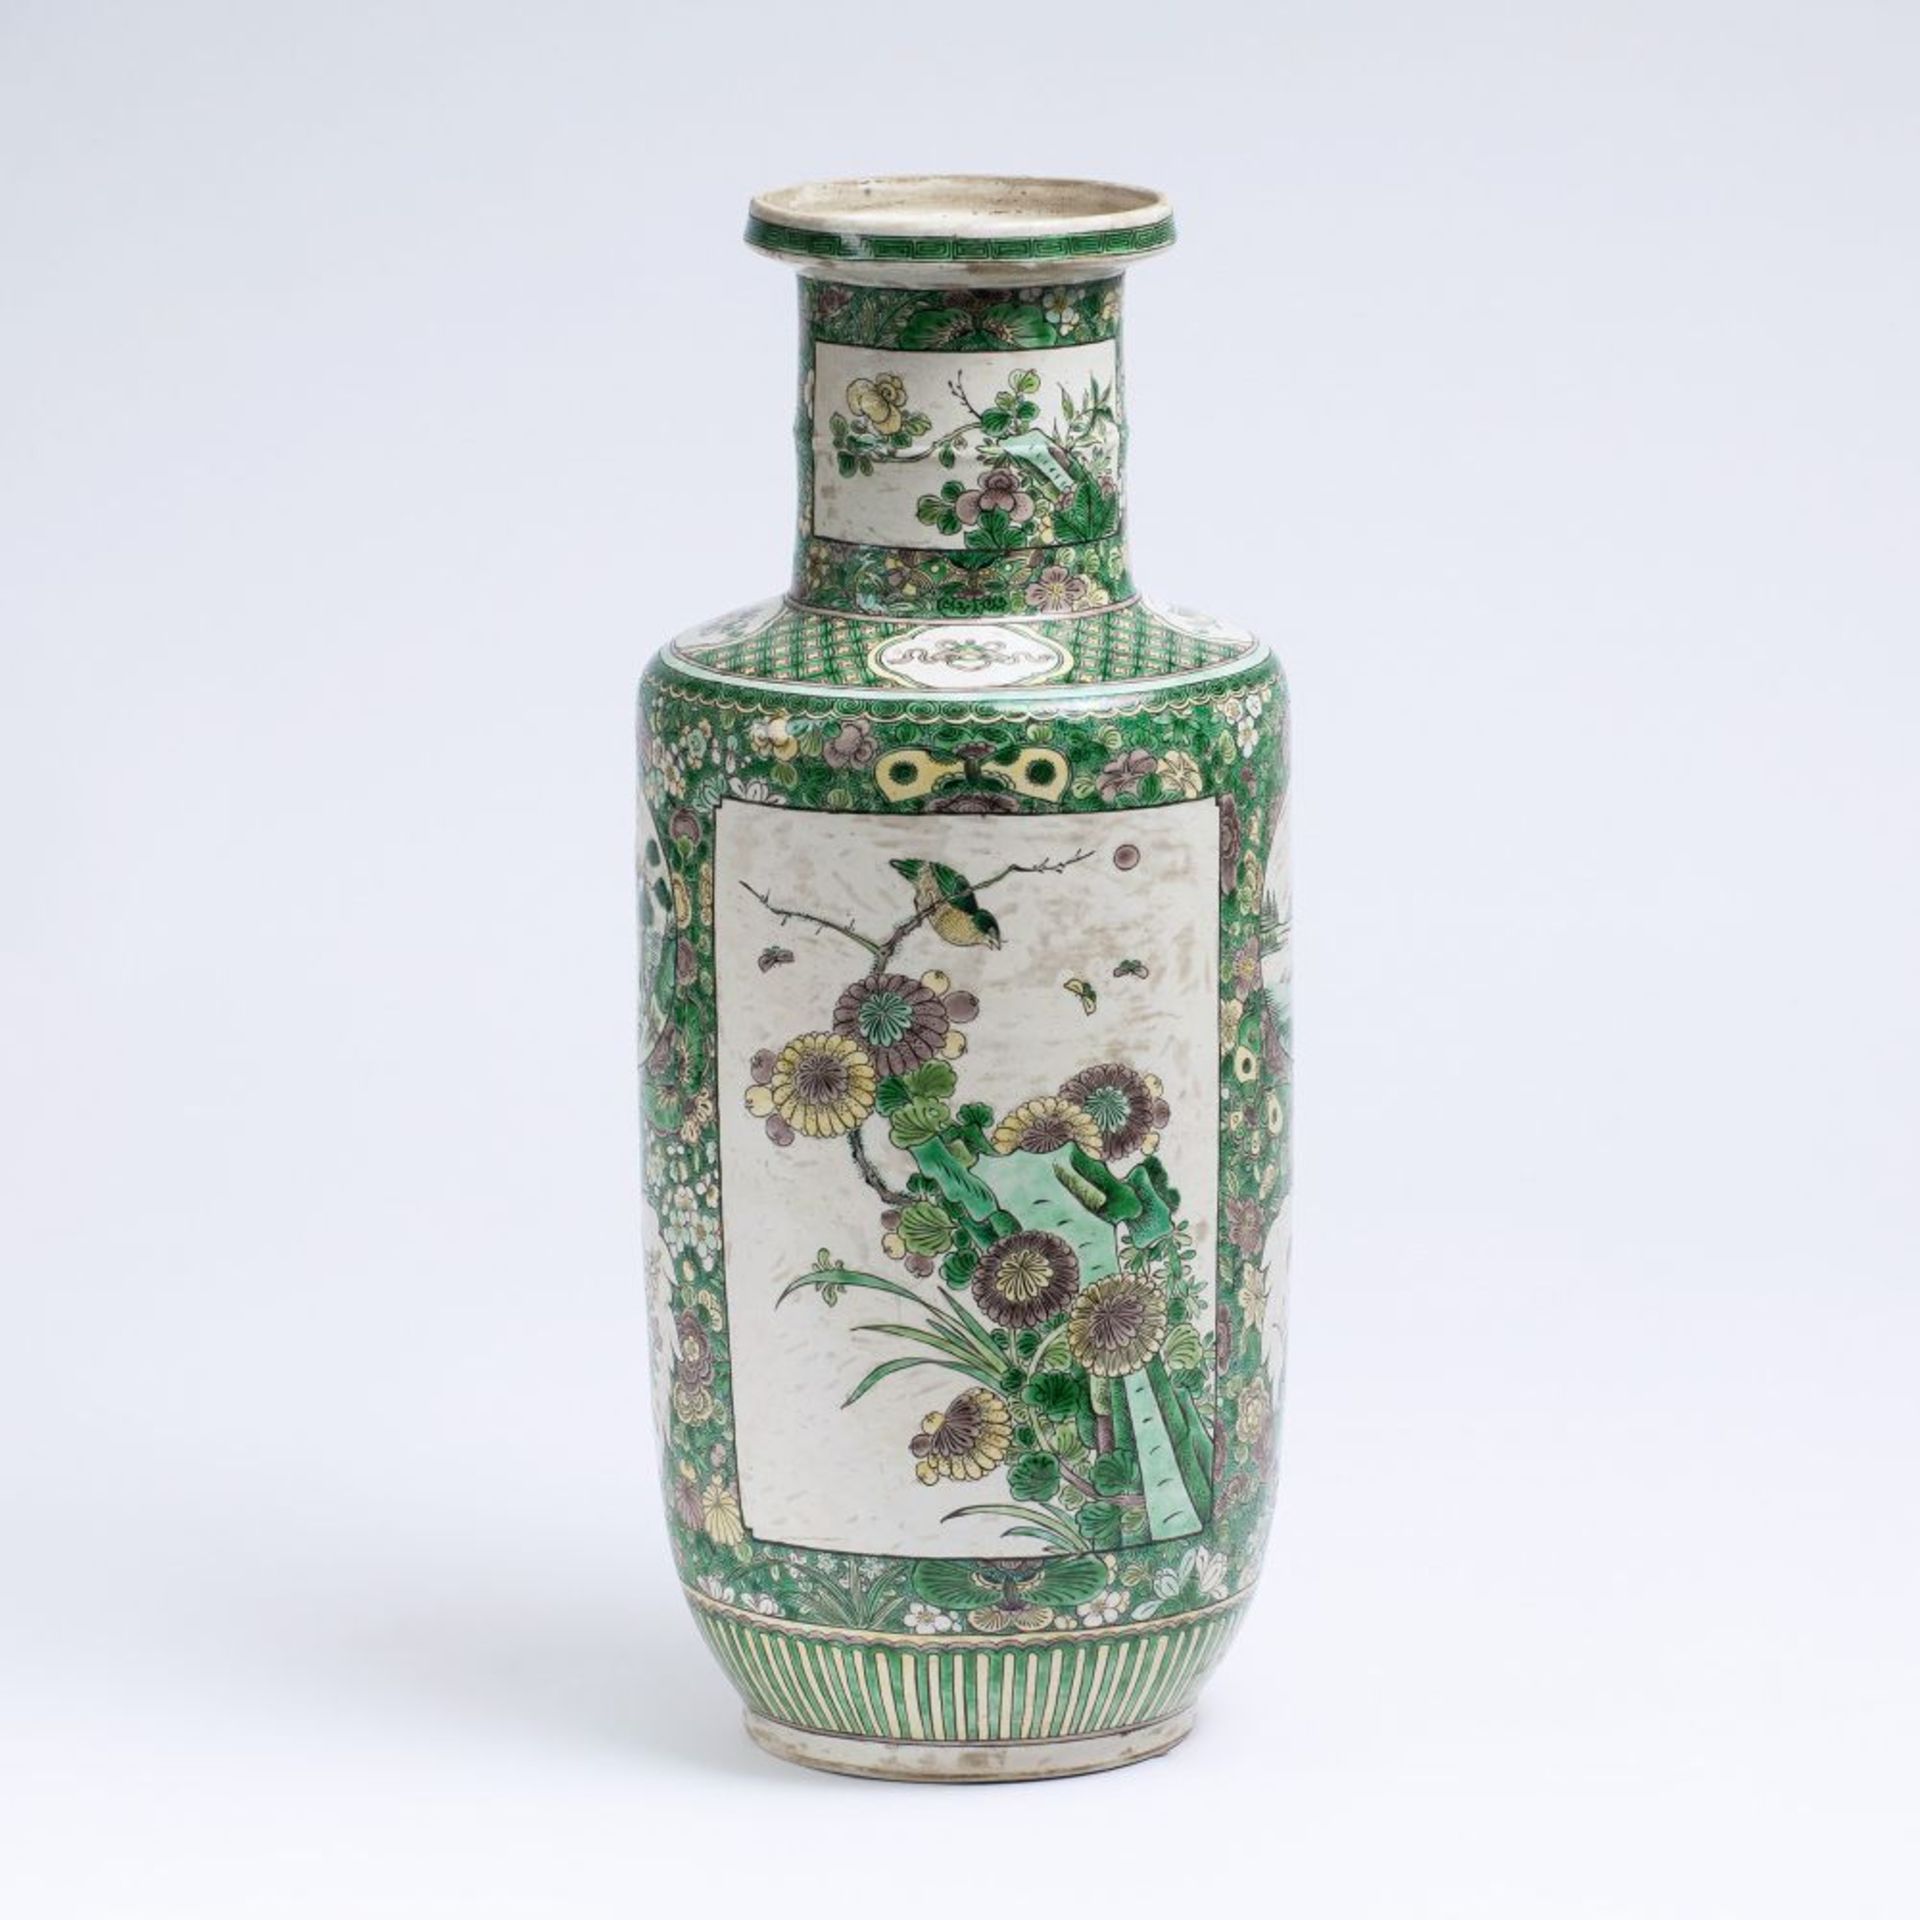 Wucai Rouleau-Vase mit Famille-verte Dekor.